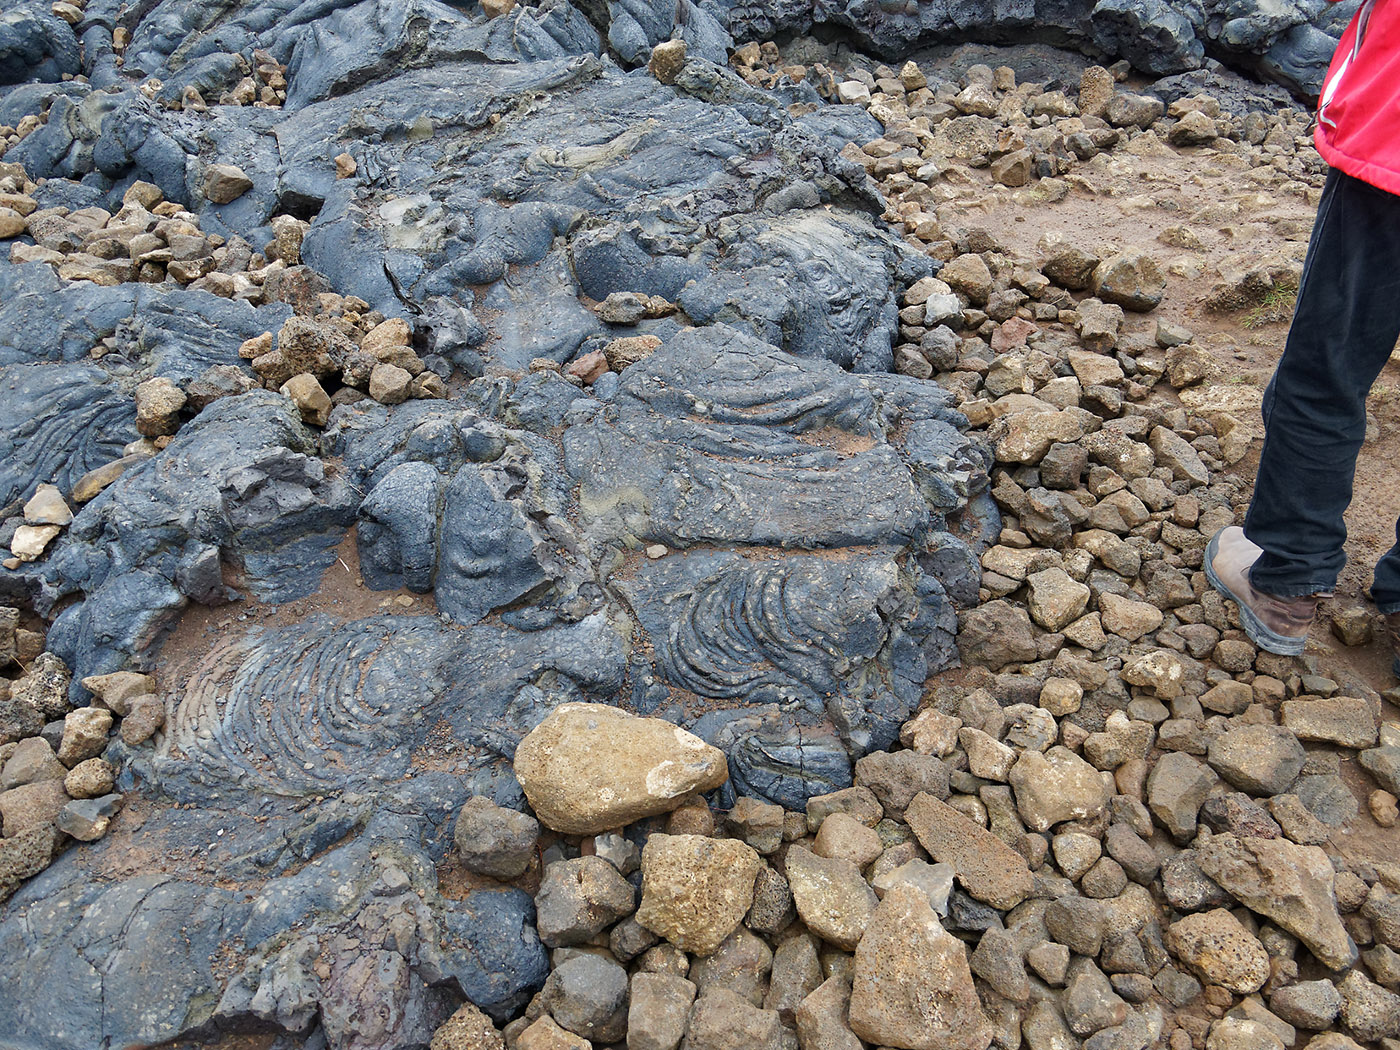 Detail of fresh lava flow in Meradalir valley